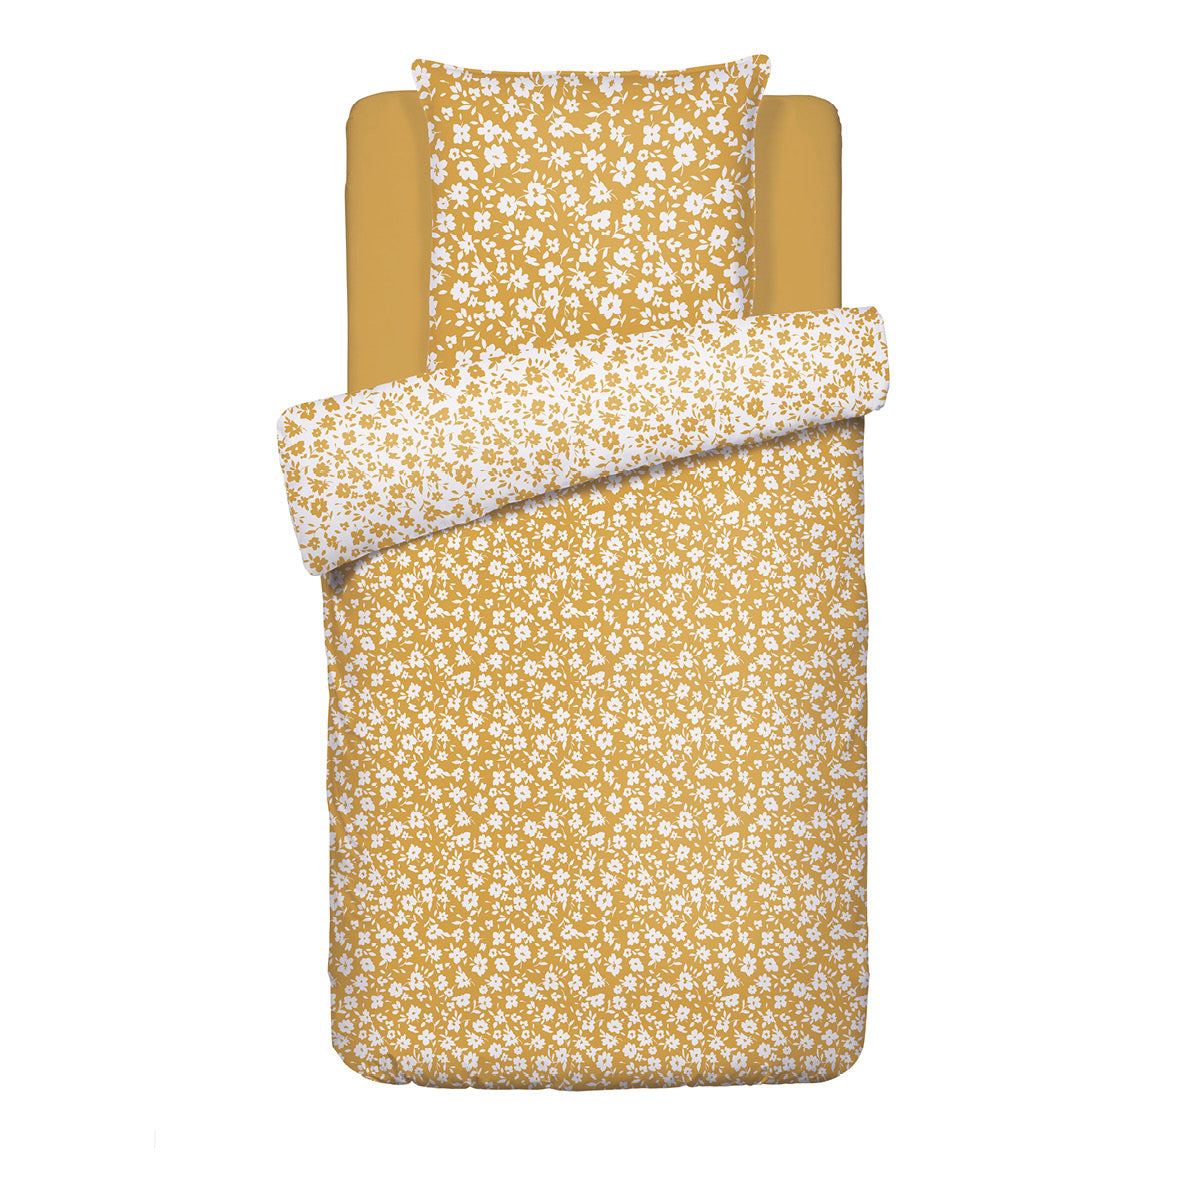 Duvet cover + pillowcase(s) cotton satin - Les Yeux de Suzanne Yellow